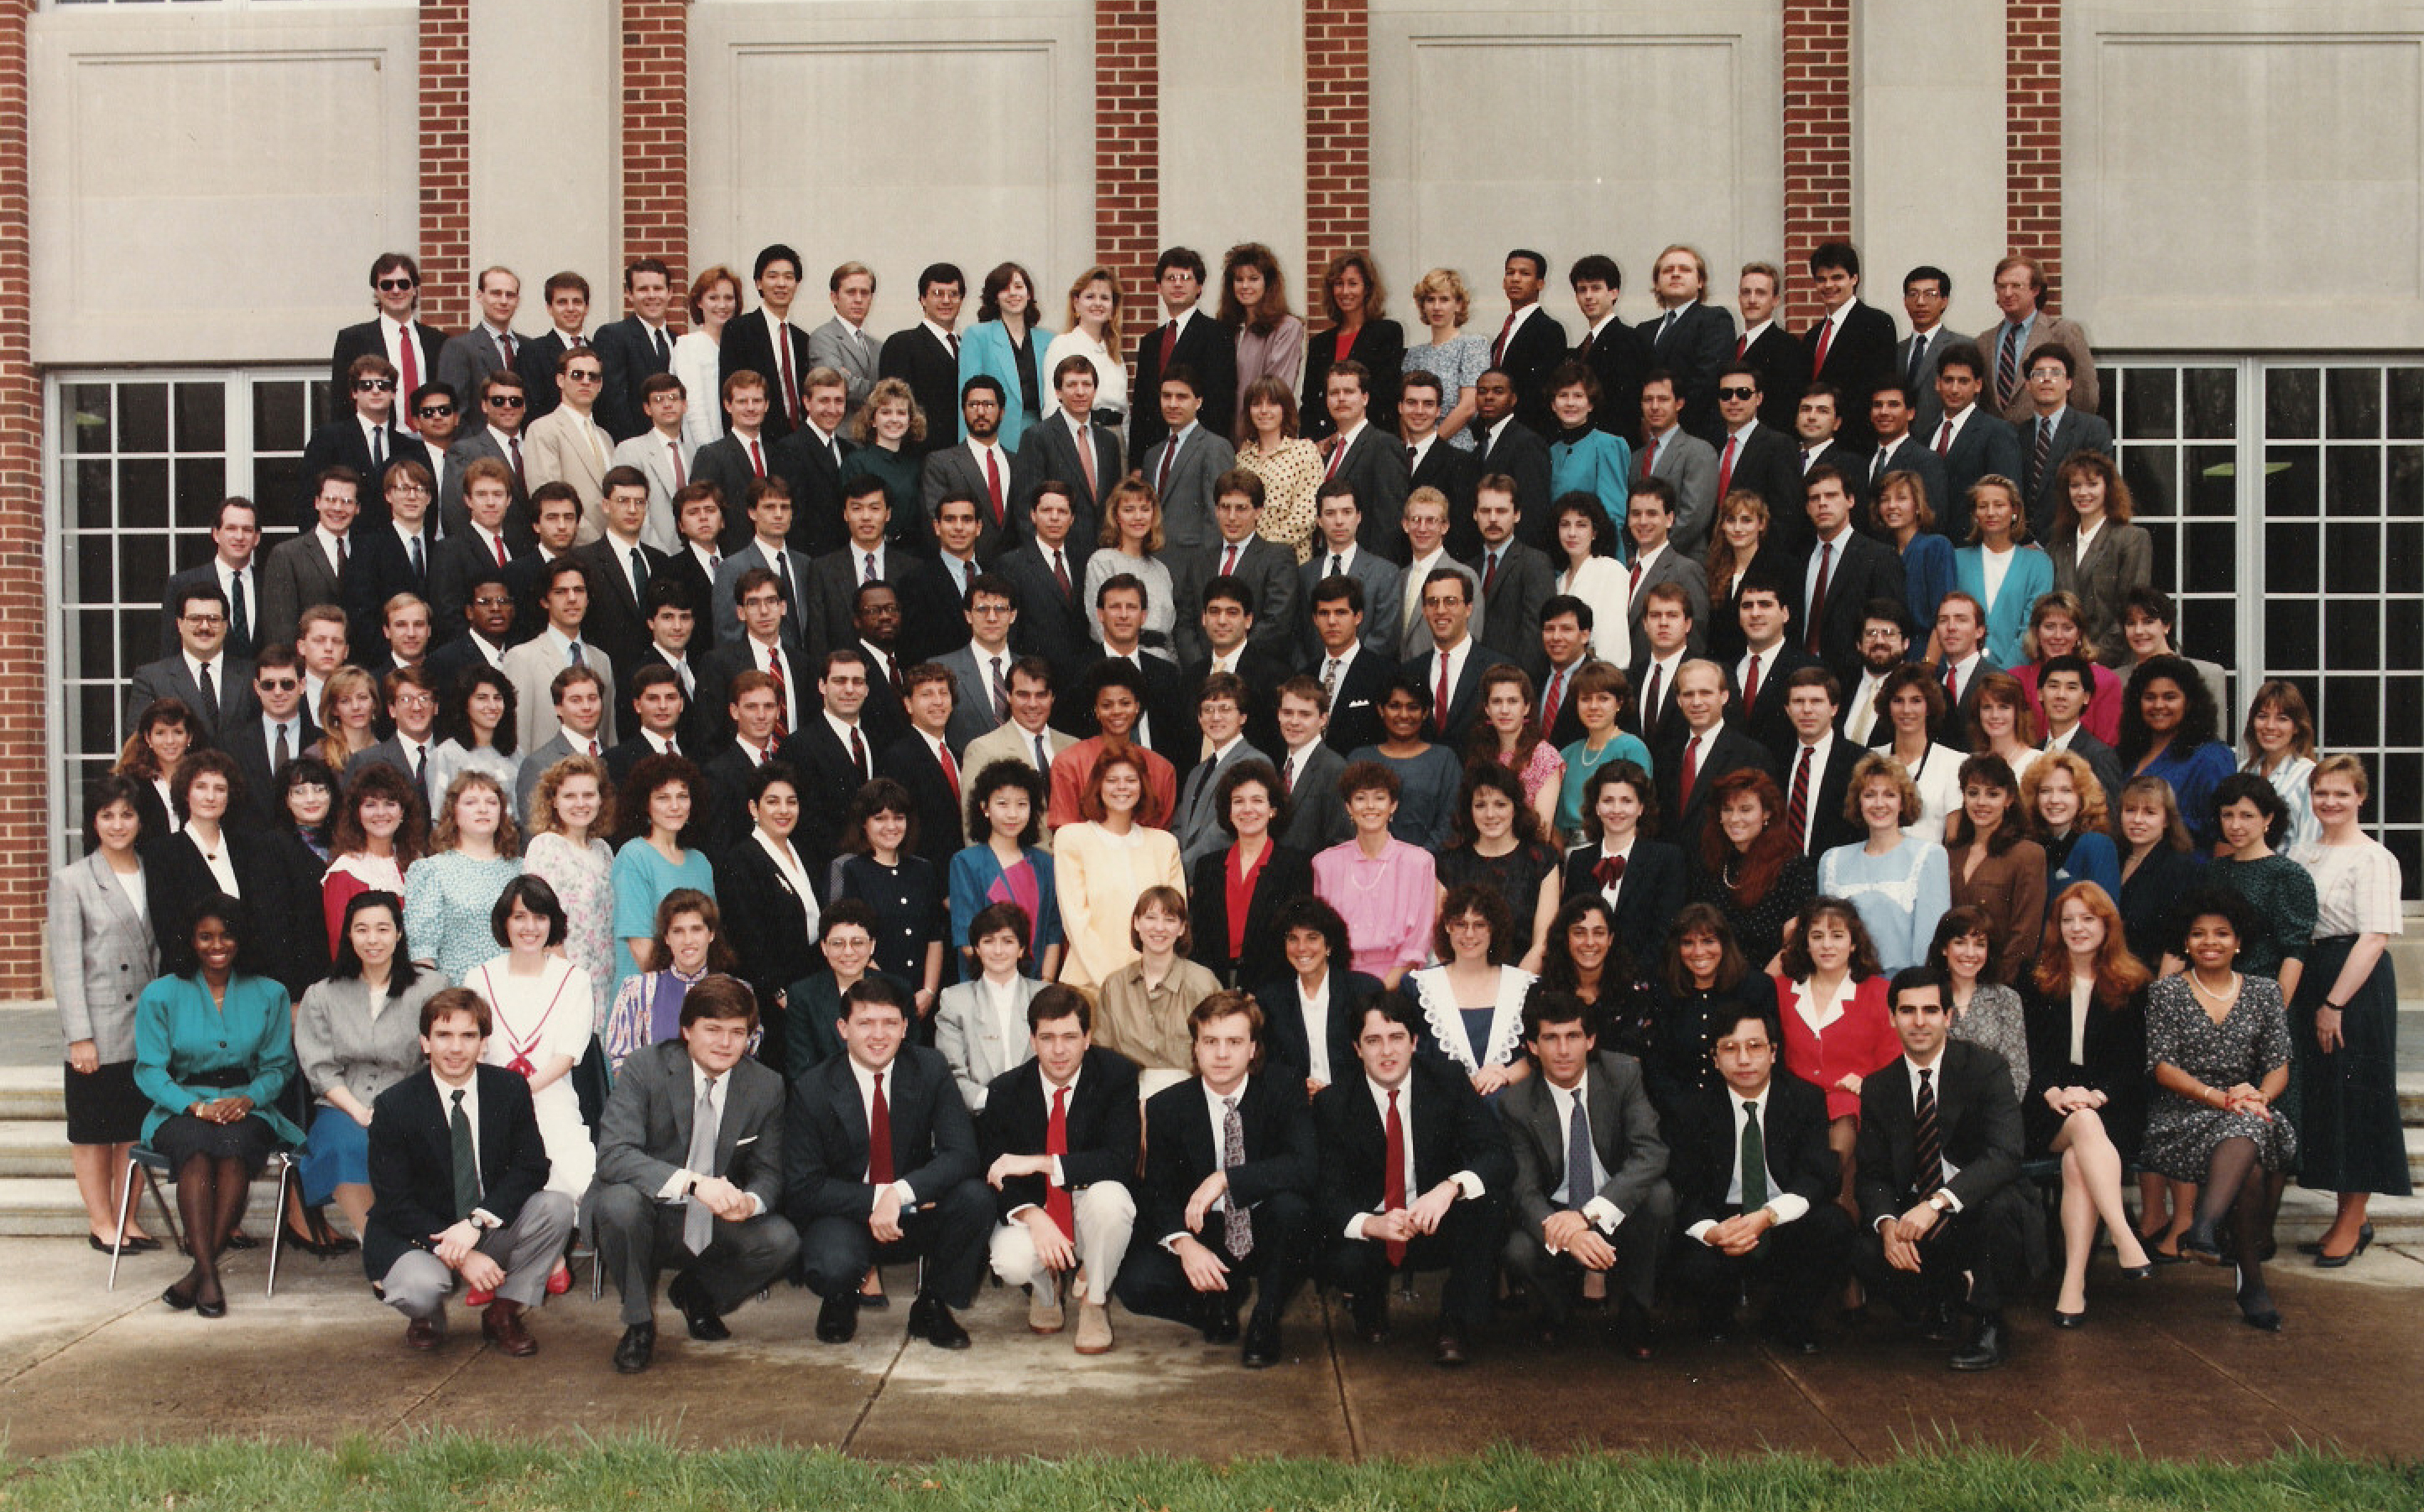 1989 Class Photo